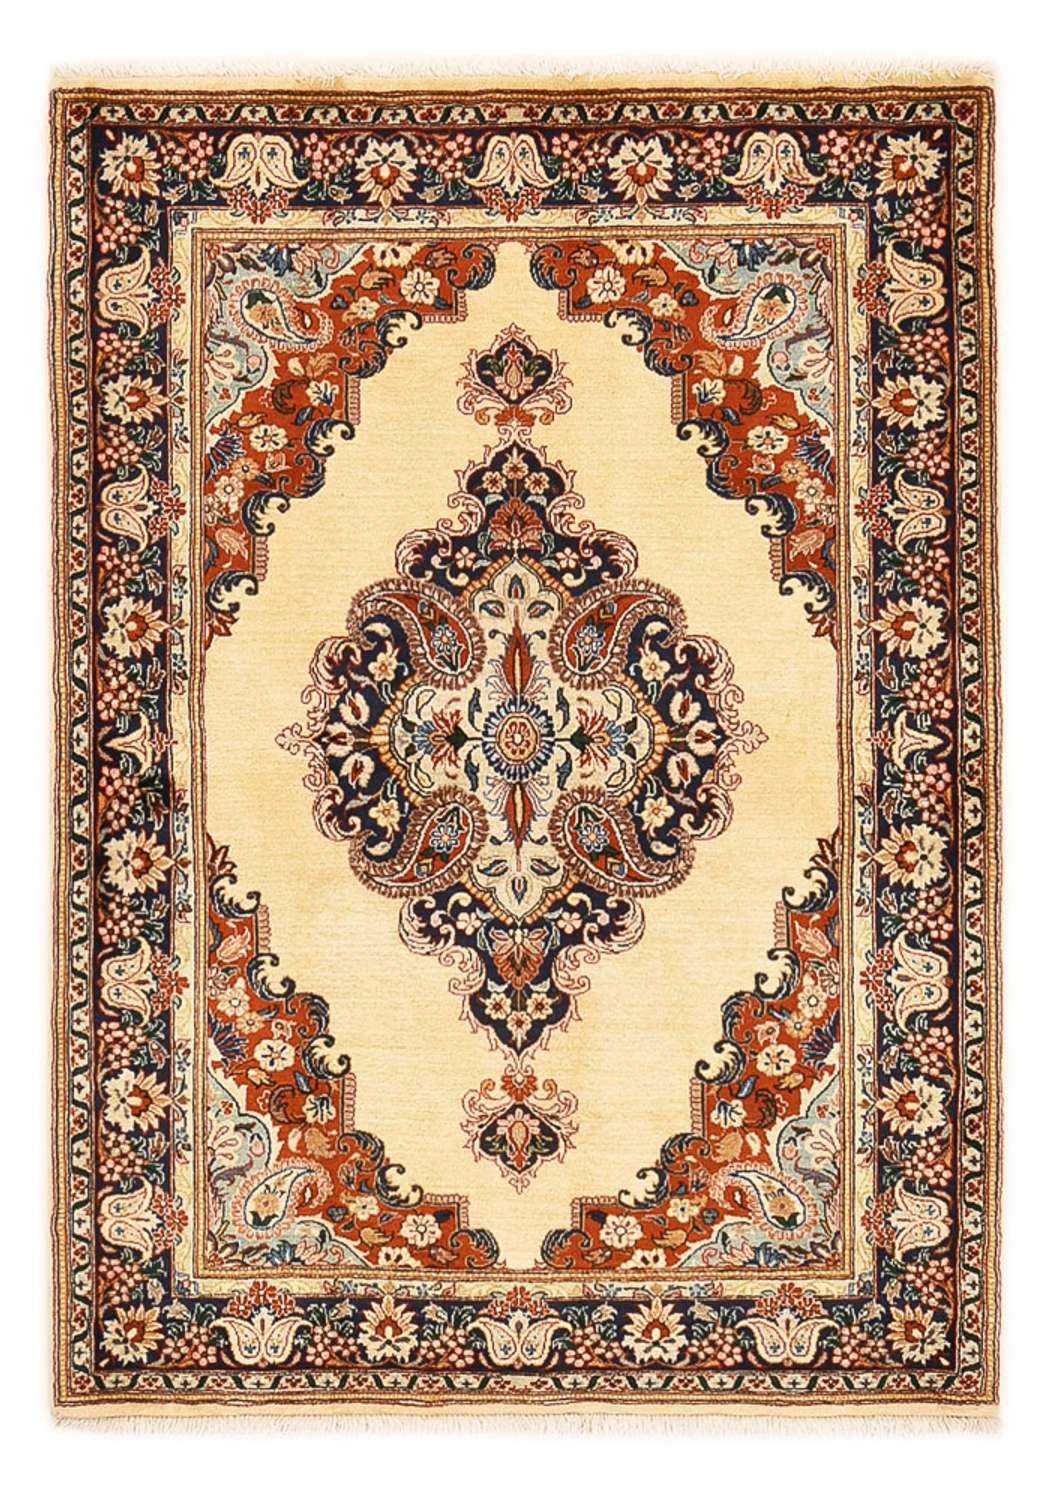 Tapis persan - Keshan - 151 x 108 cm - multicolore